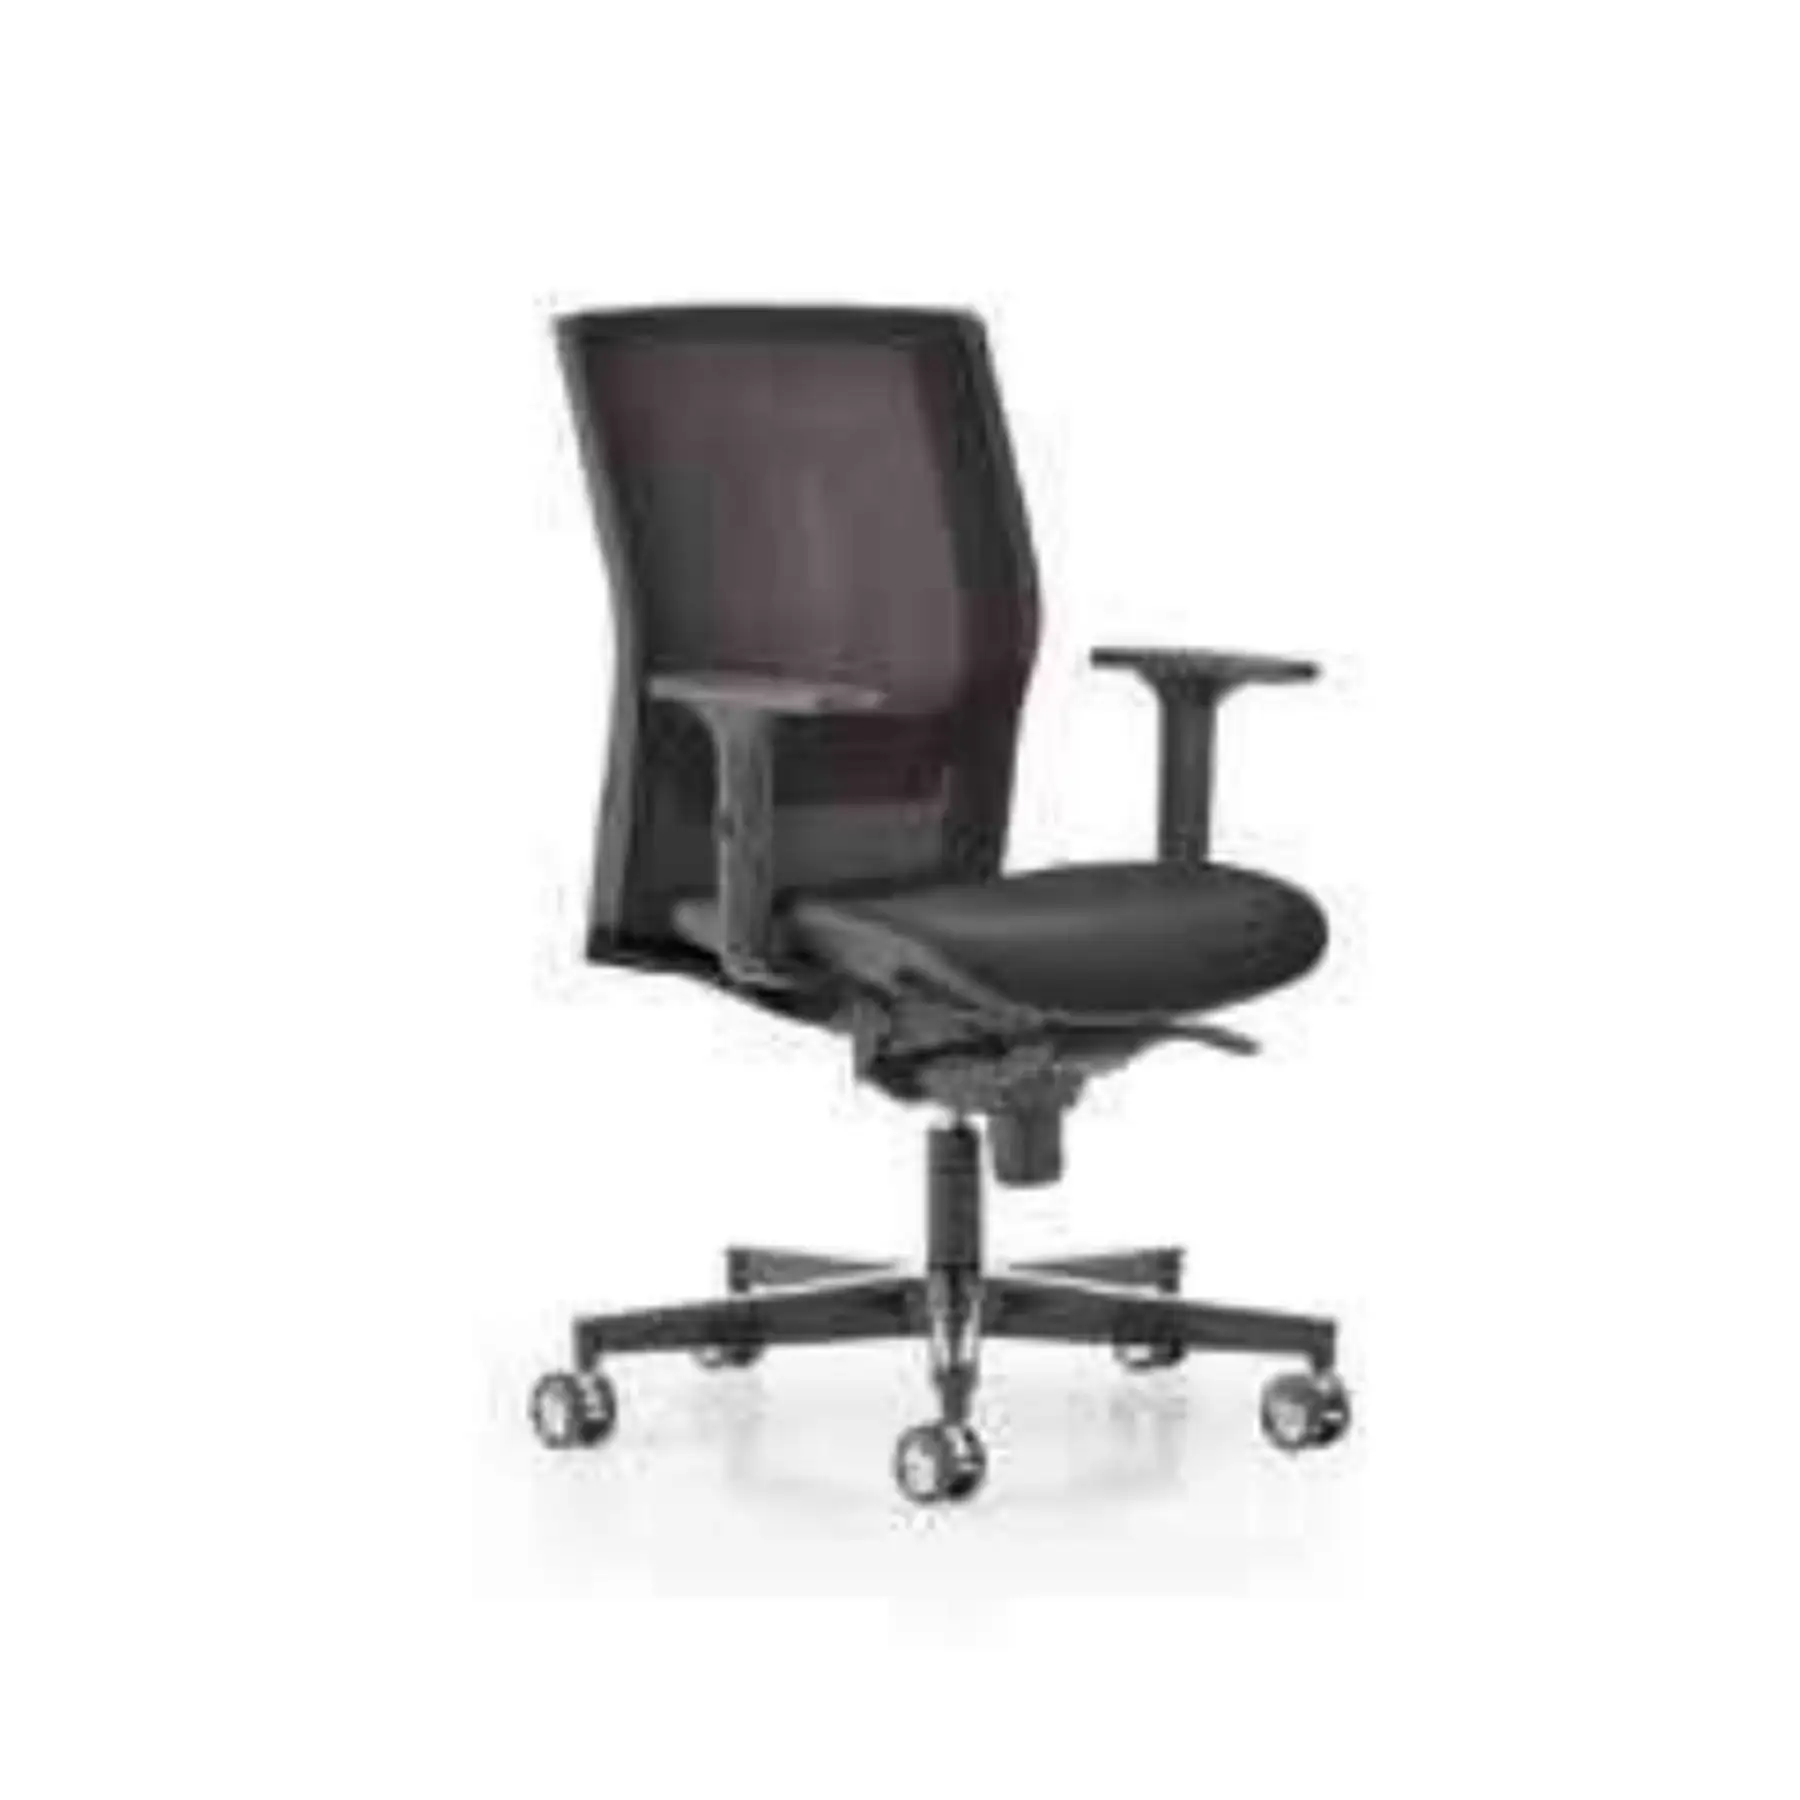 Сетчатая спинка и кресло Alixa-идеальный комфорт с эргономичным дизайном-идеально подходит для долгих часов работы